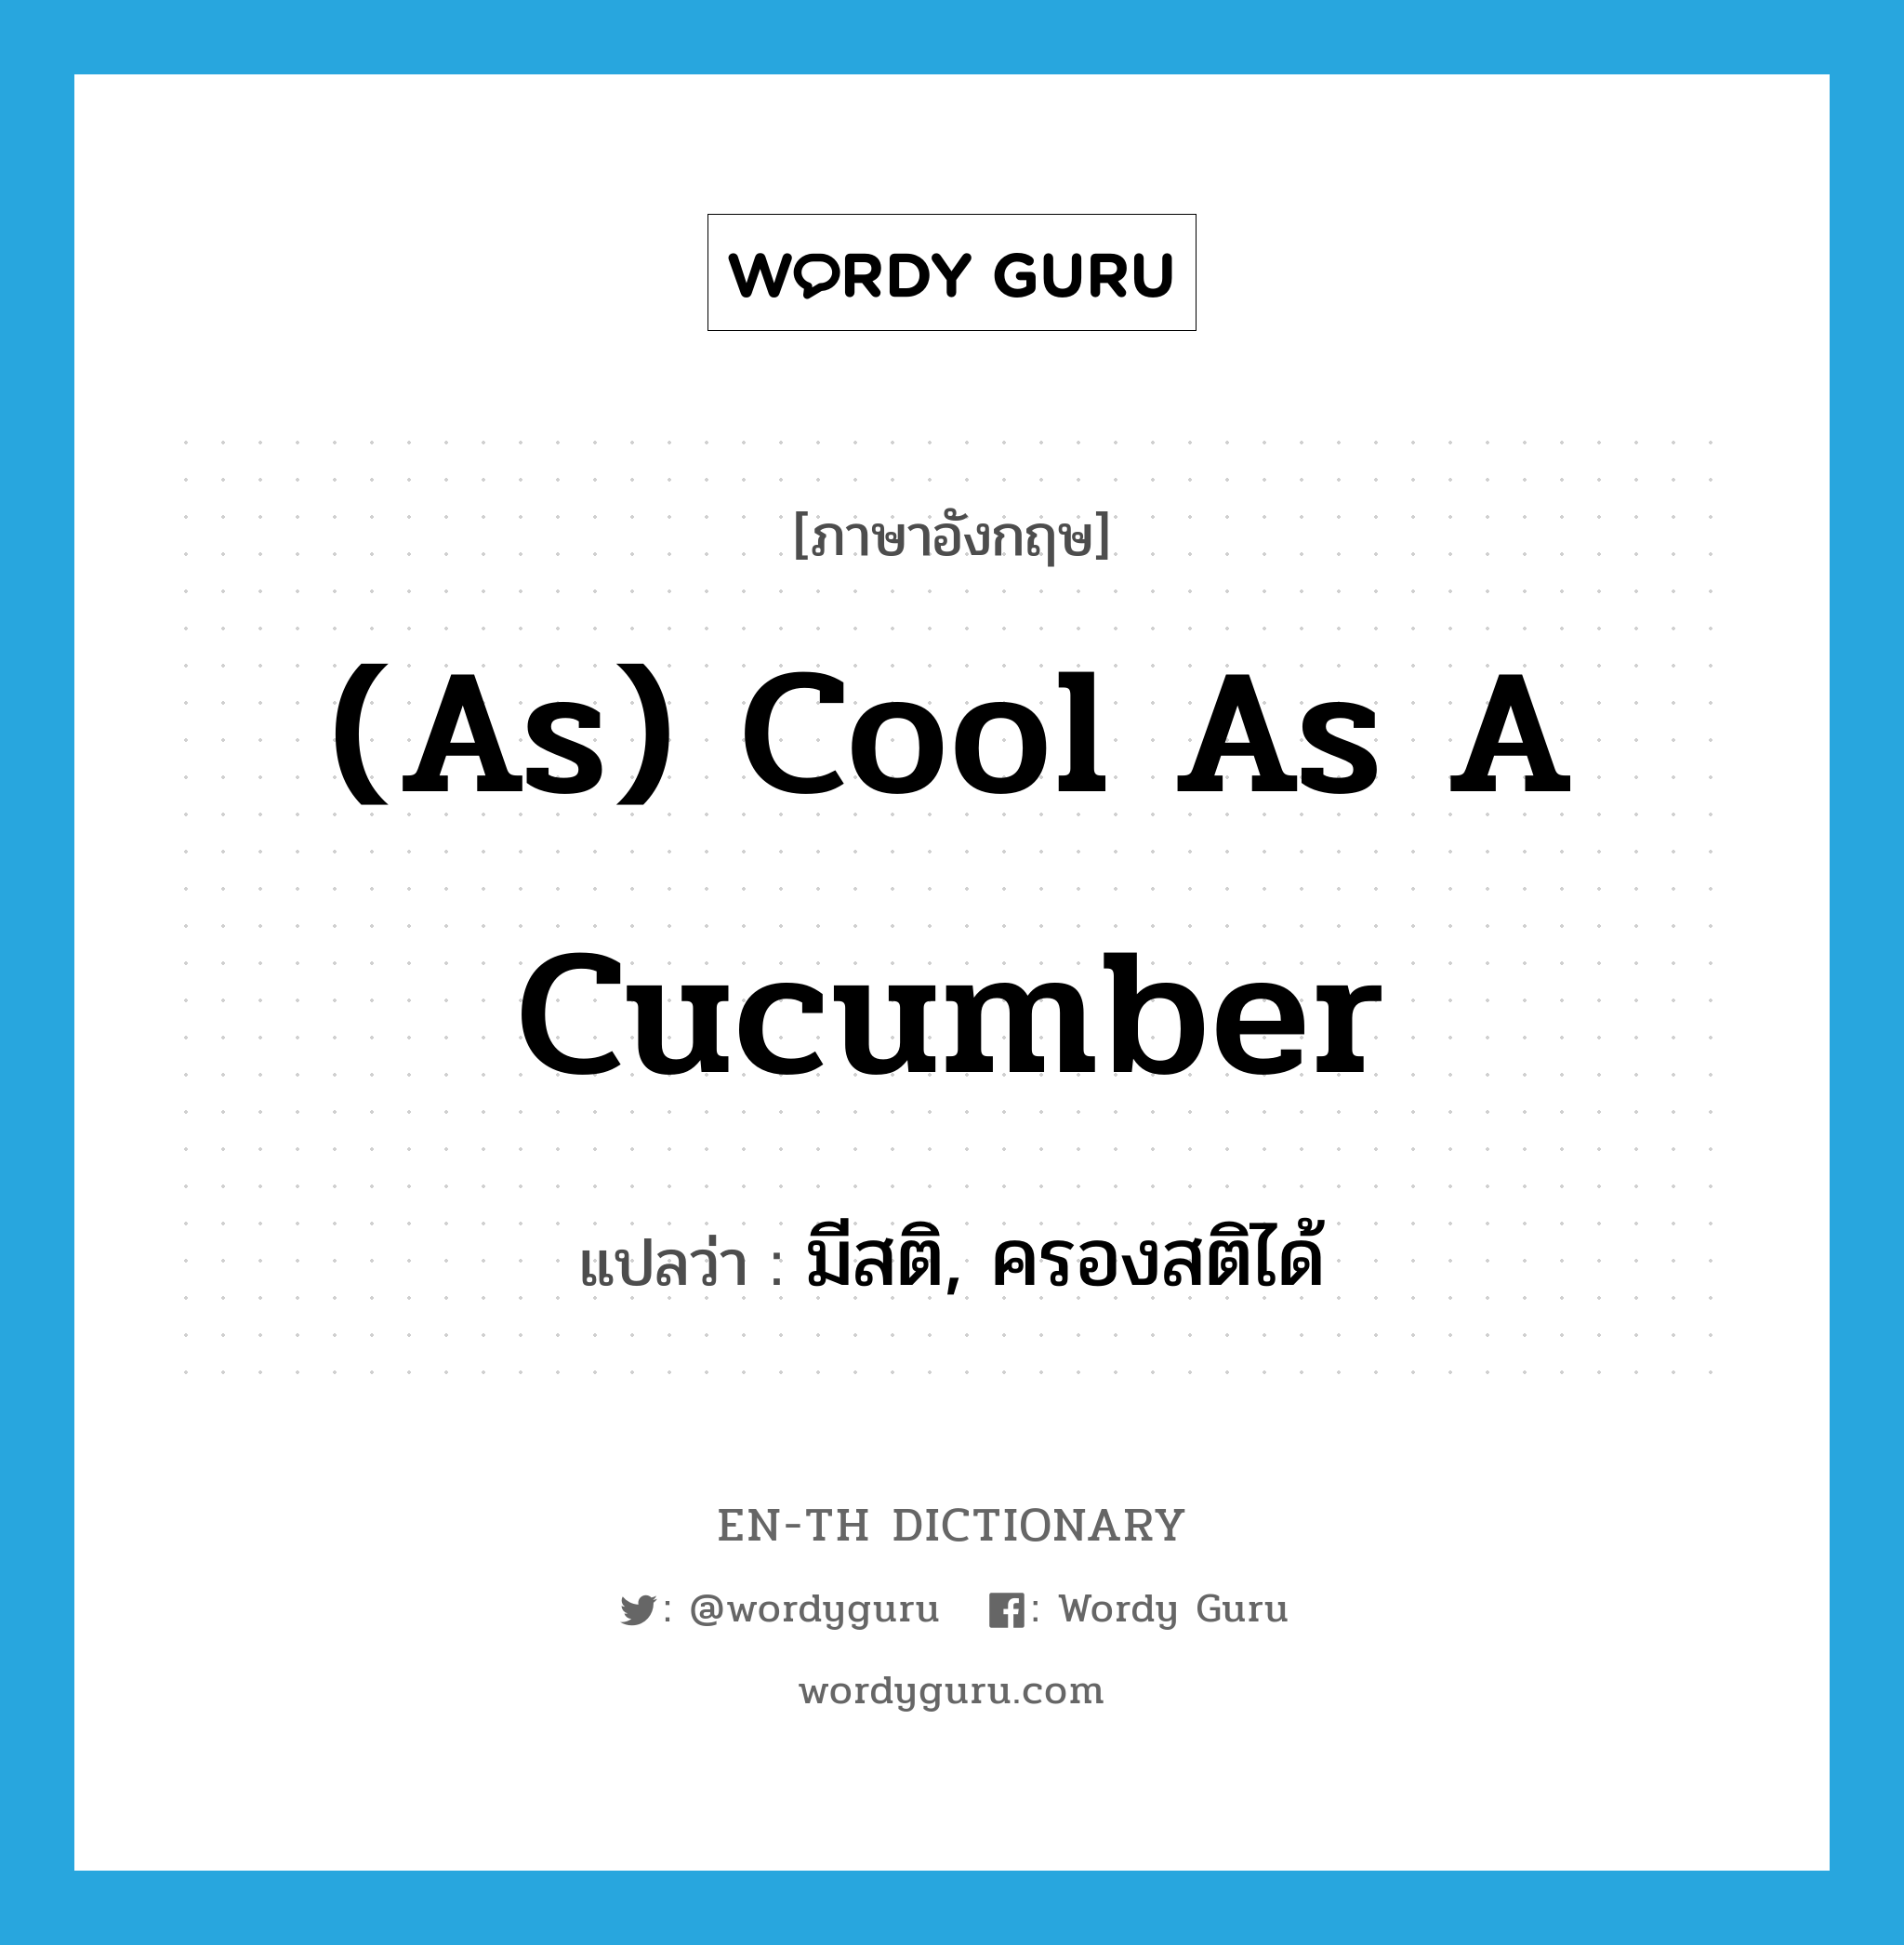 มีสติ, ครองสติได้ ภาษาอังกฤษ?, คำศัพท์ภาษาอังกฤษ มีสติ, ครองสติได้ แปลว่า (as) cool as a cucumber ประเภท IDM หมวด IDM